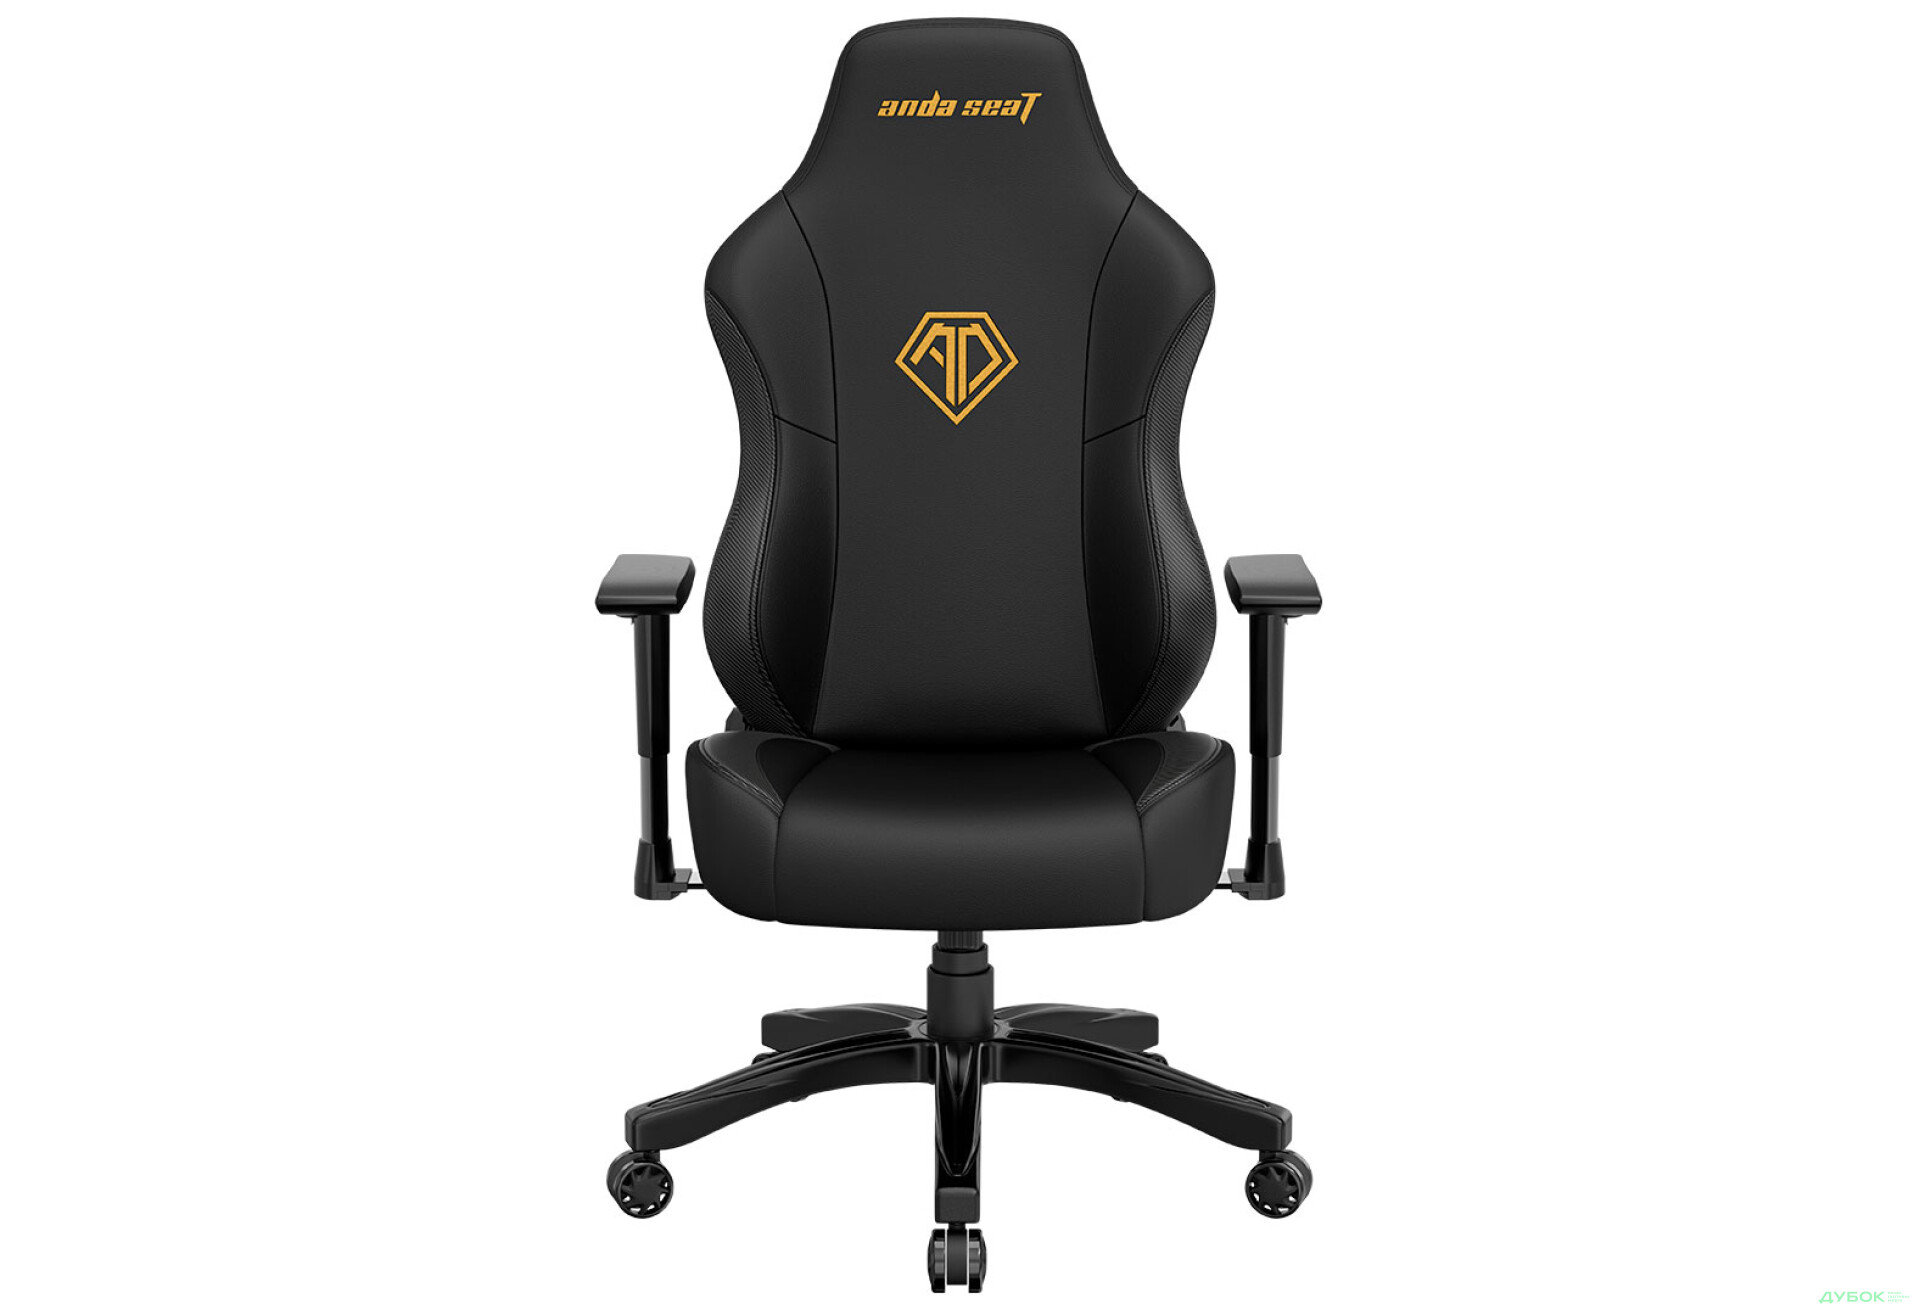 Фото 2 - Компьютерное кресло Anda Seat Phantom 3 70x55x134 см игровое, черное с золотым